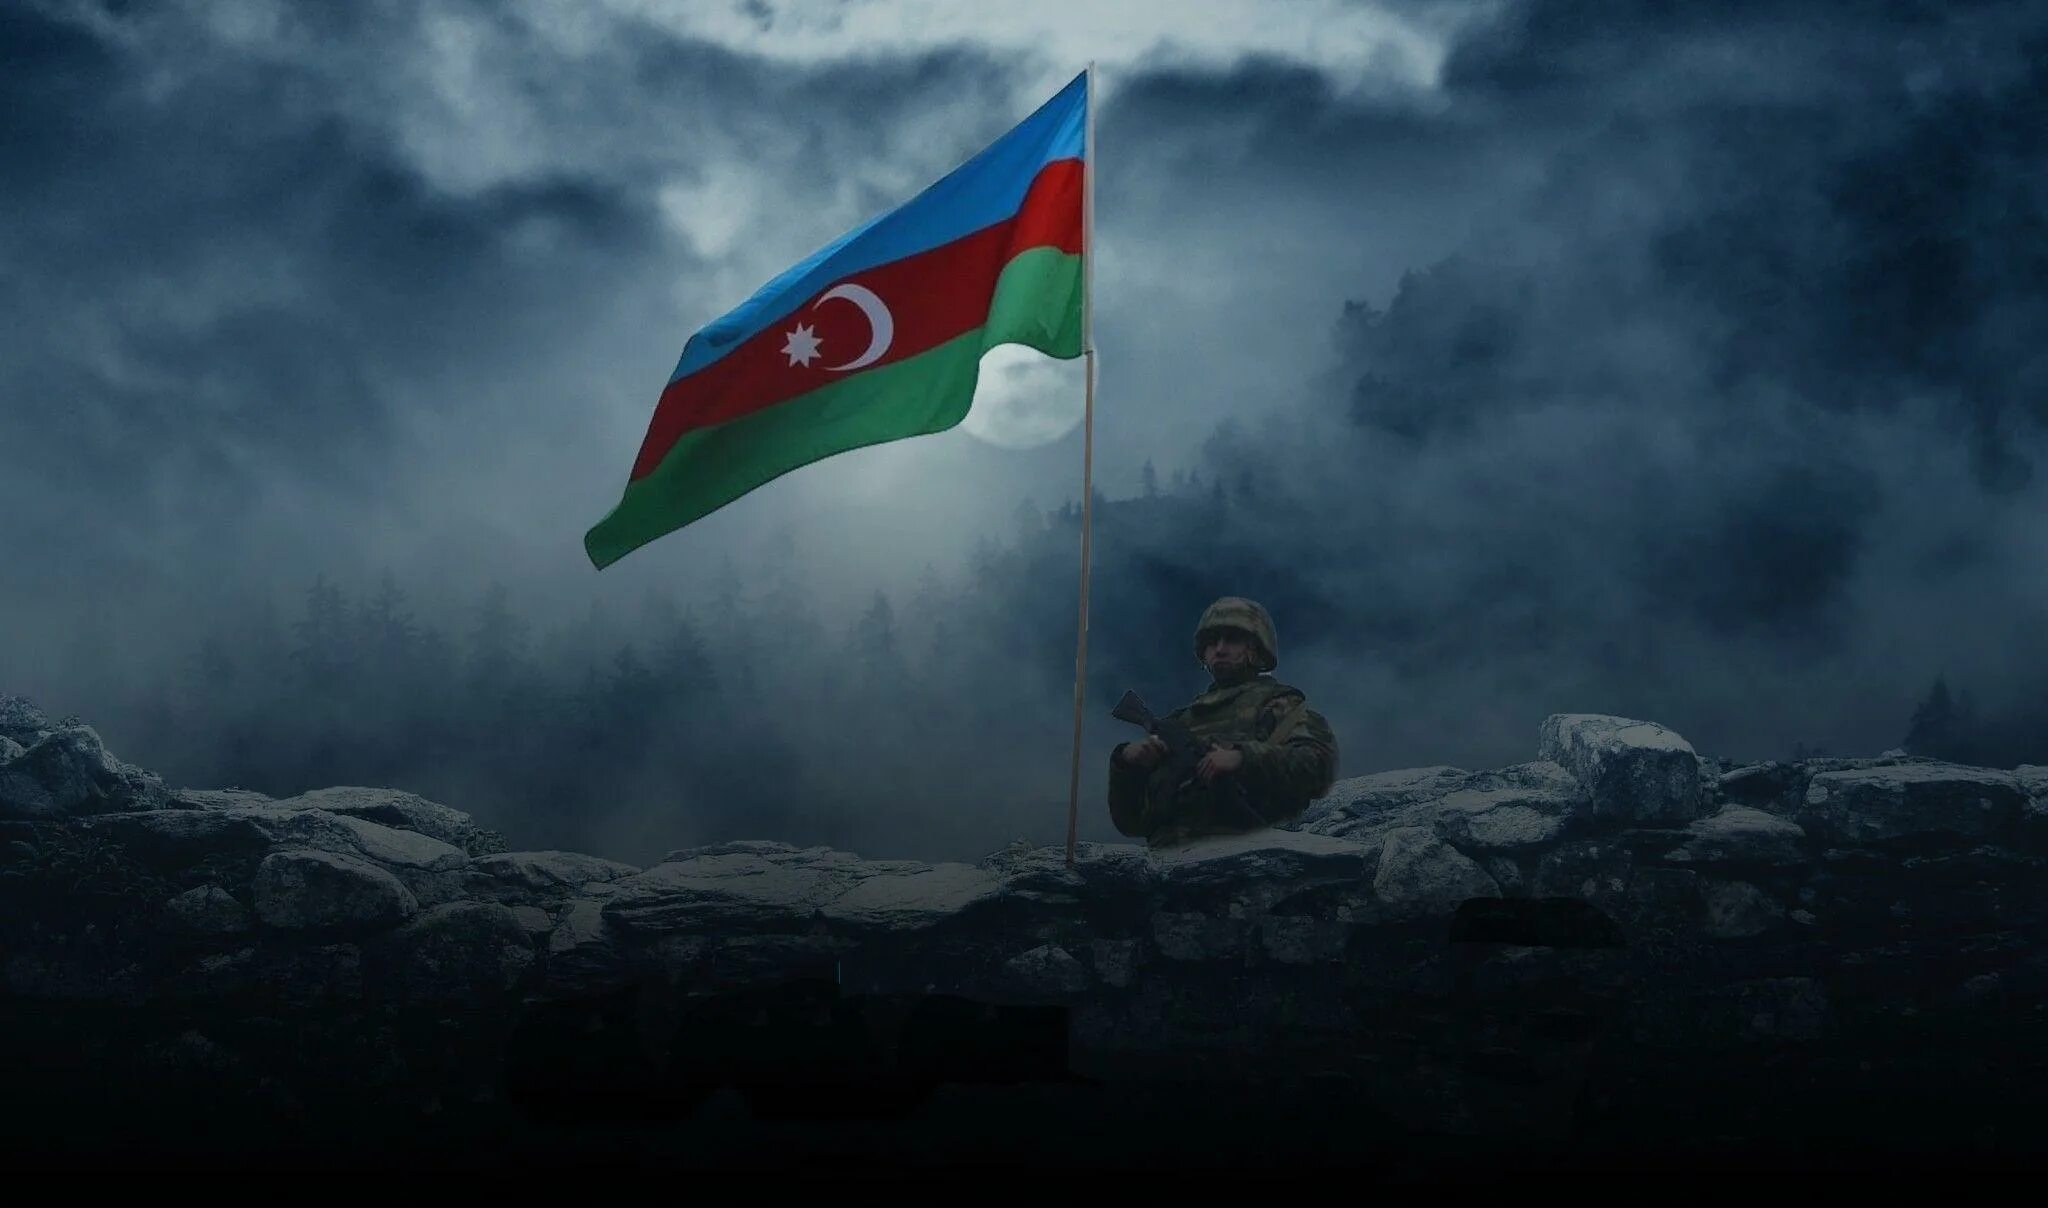 Azeri 2. Азербайджан флаг спецназ. Азербайджанский военный с флагом. Азербайджанский солдат. Знамена армии Азербайджана.